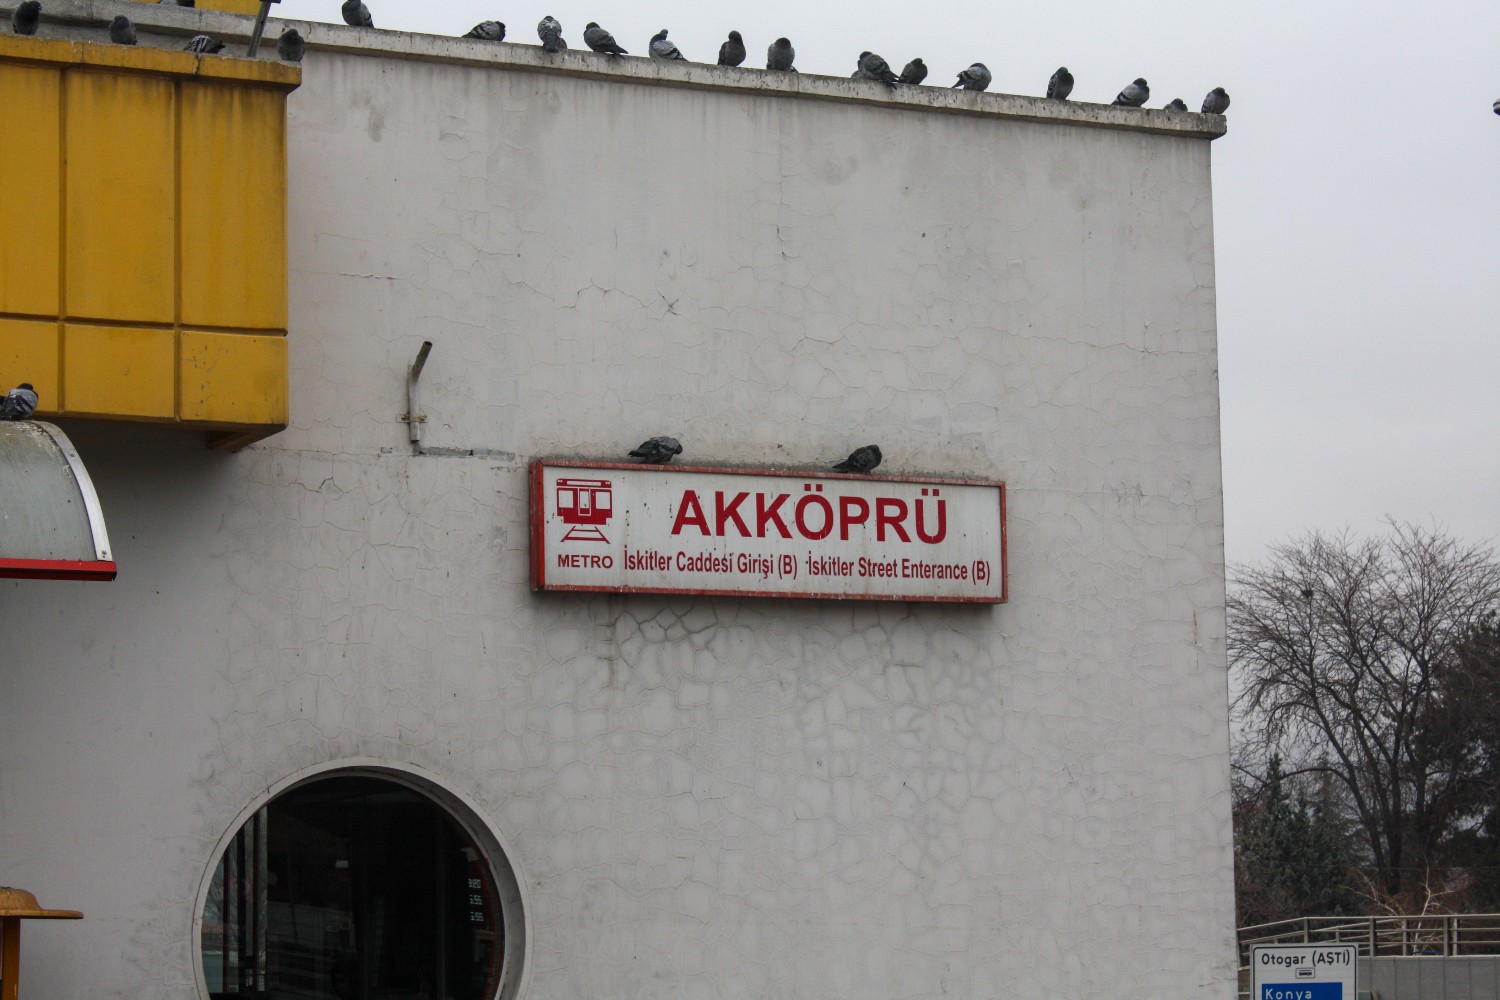 Анкара — Метрополитен — Красная линия; Транспорт и животные